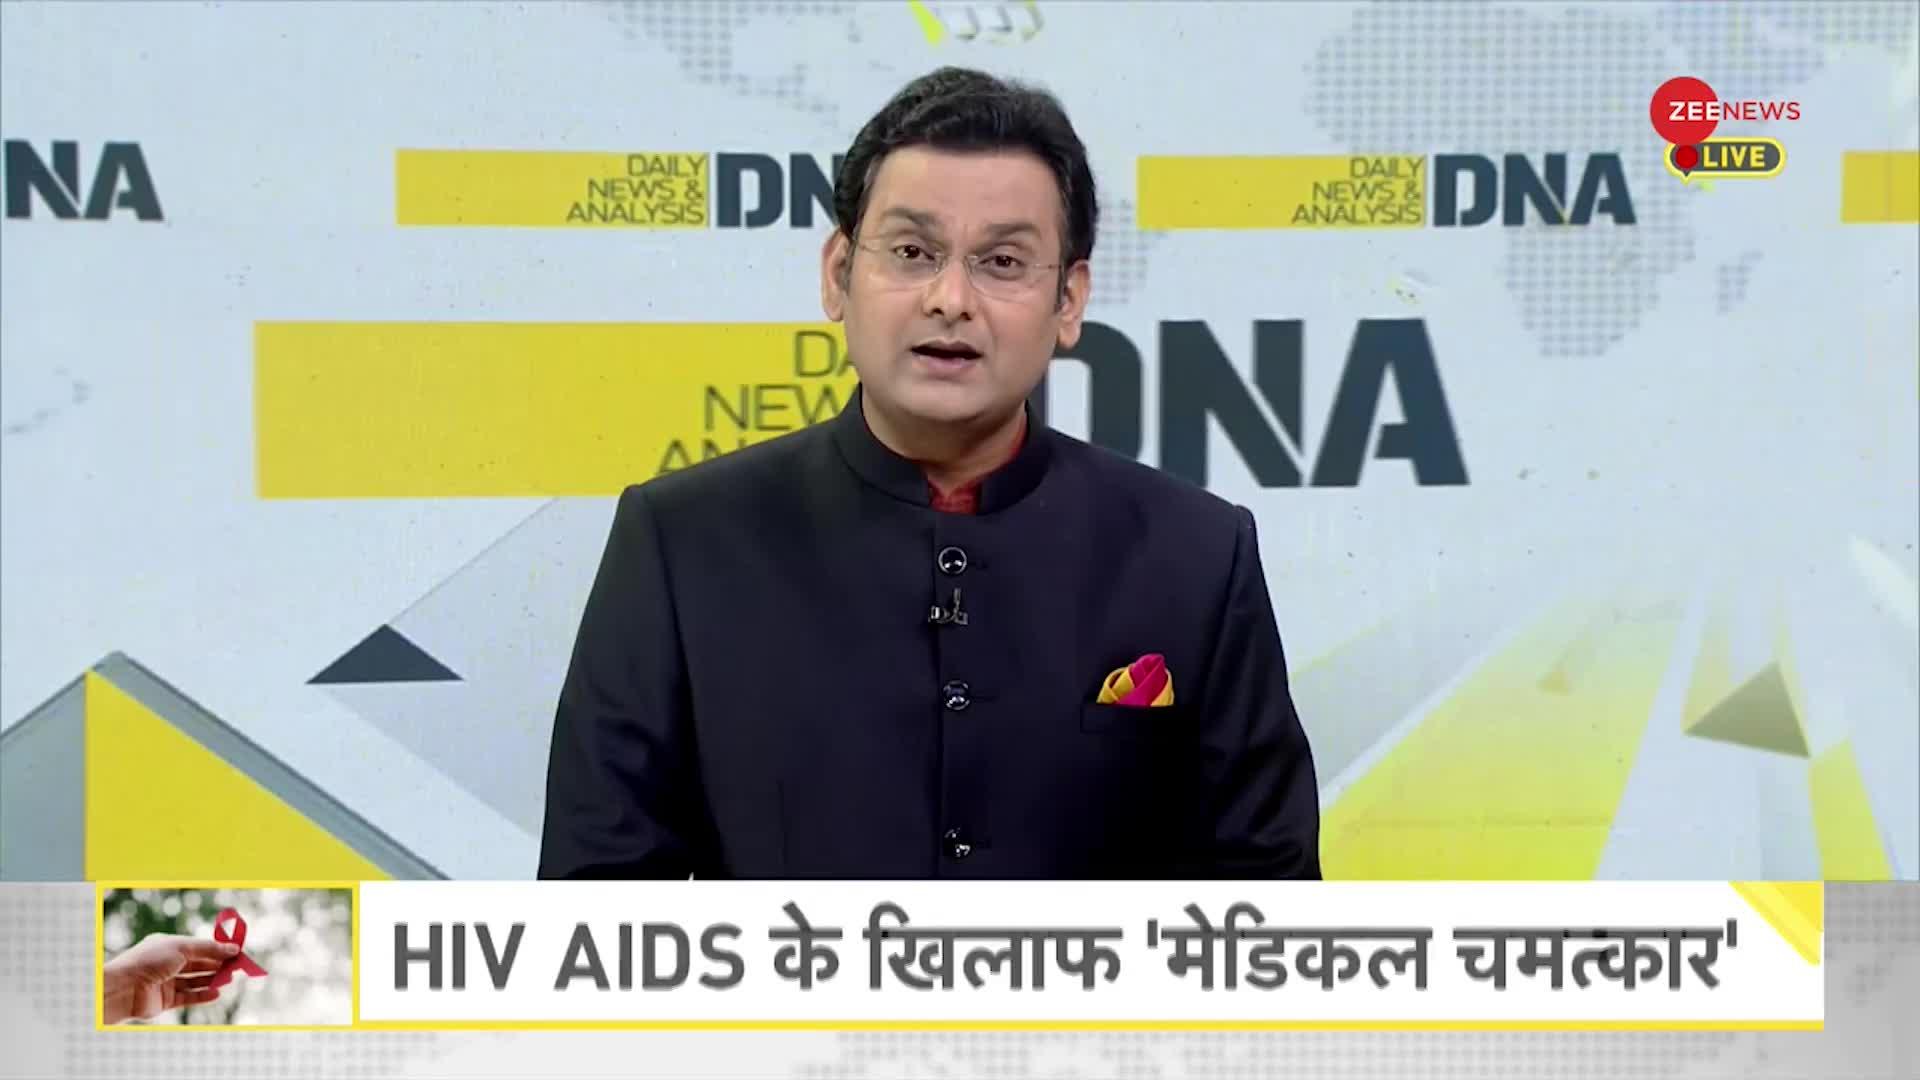 DNA: HIV AIDS के खिलाफ 'मेडिकल चमत्कार', HIV अब नहीं रहा लाइलाज